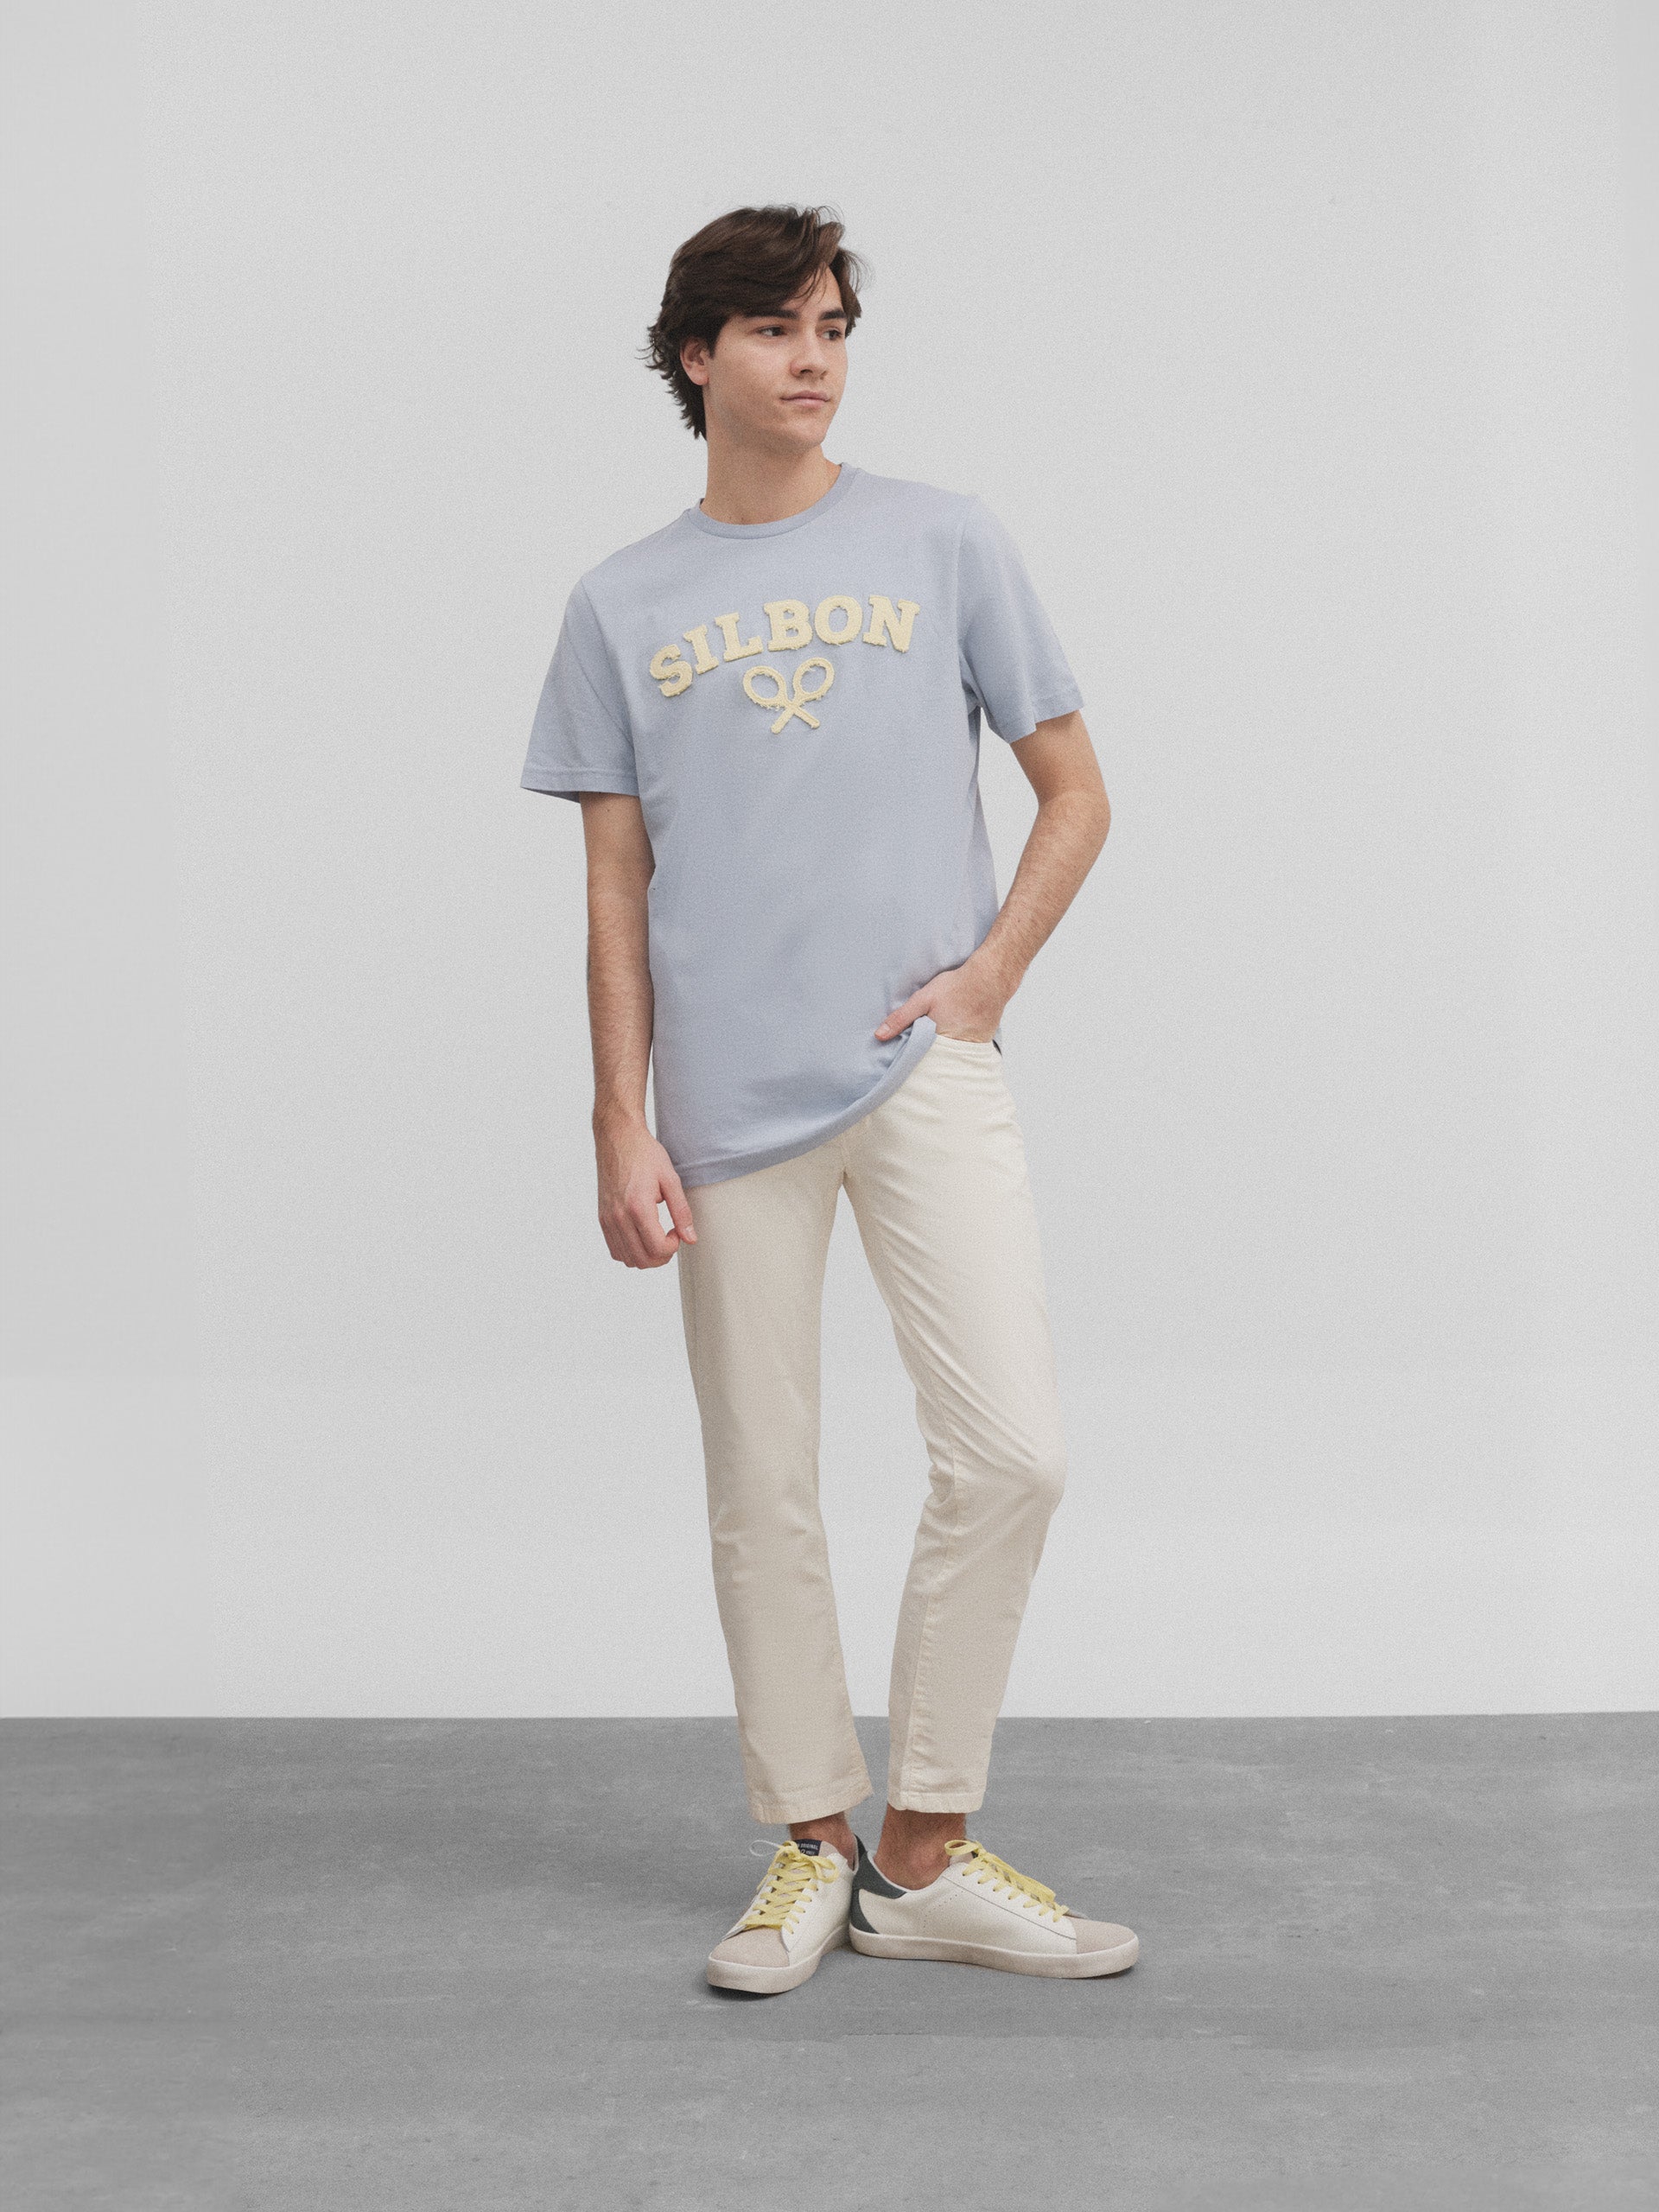 Silbon medium blue racket t-shirt